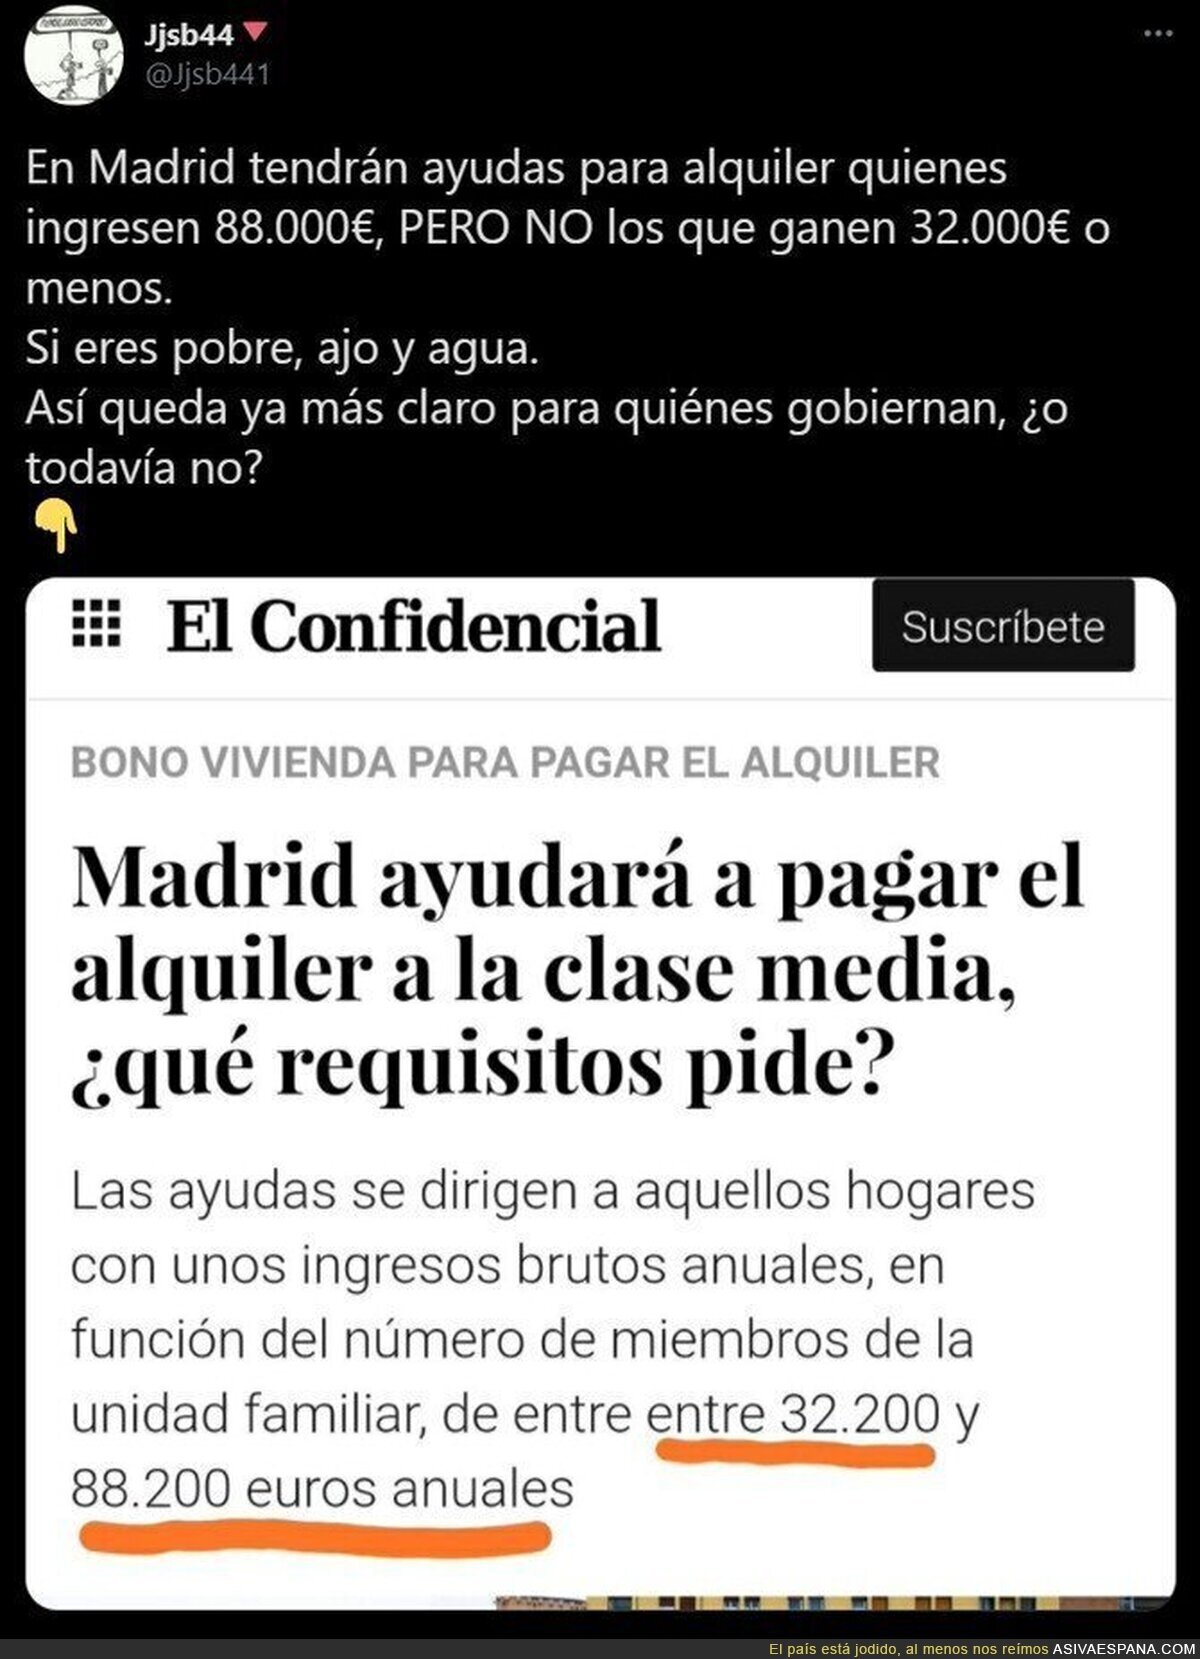 La clase media según el PP en Madrid a la que ayudará a pagar el alquiler